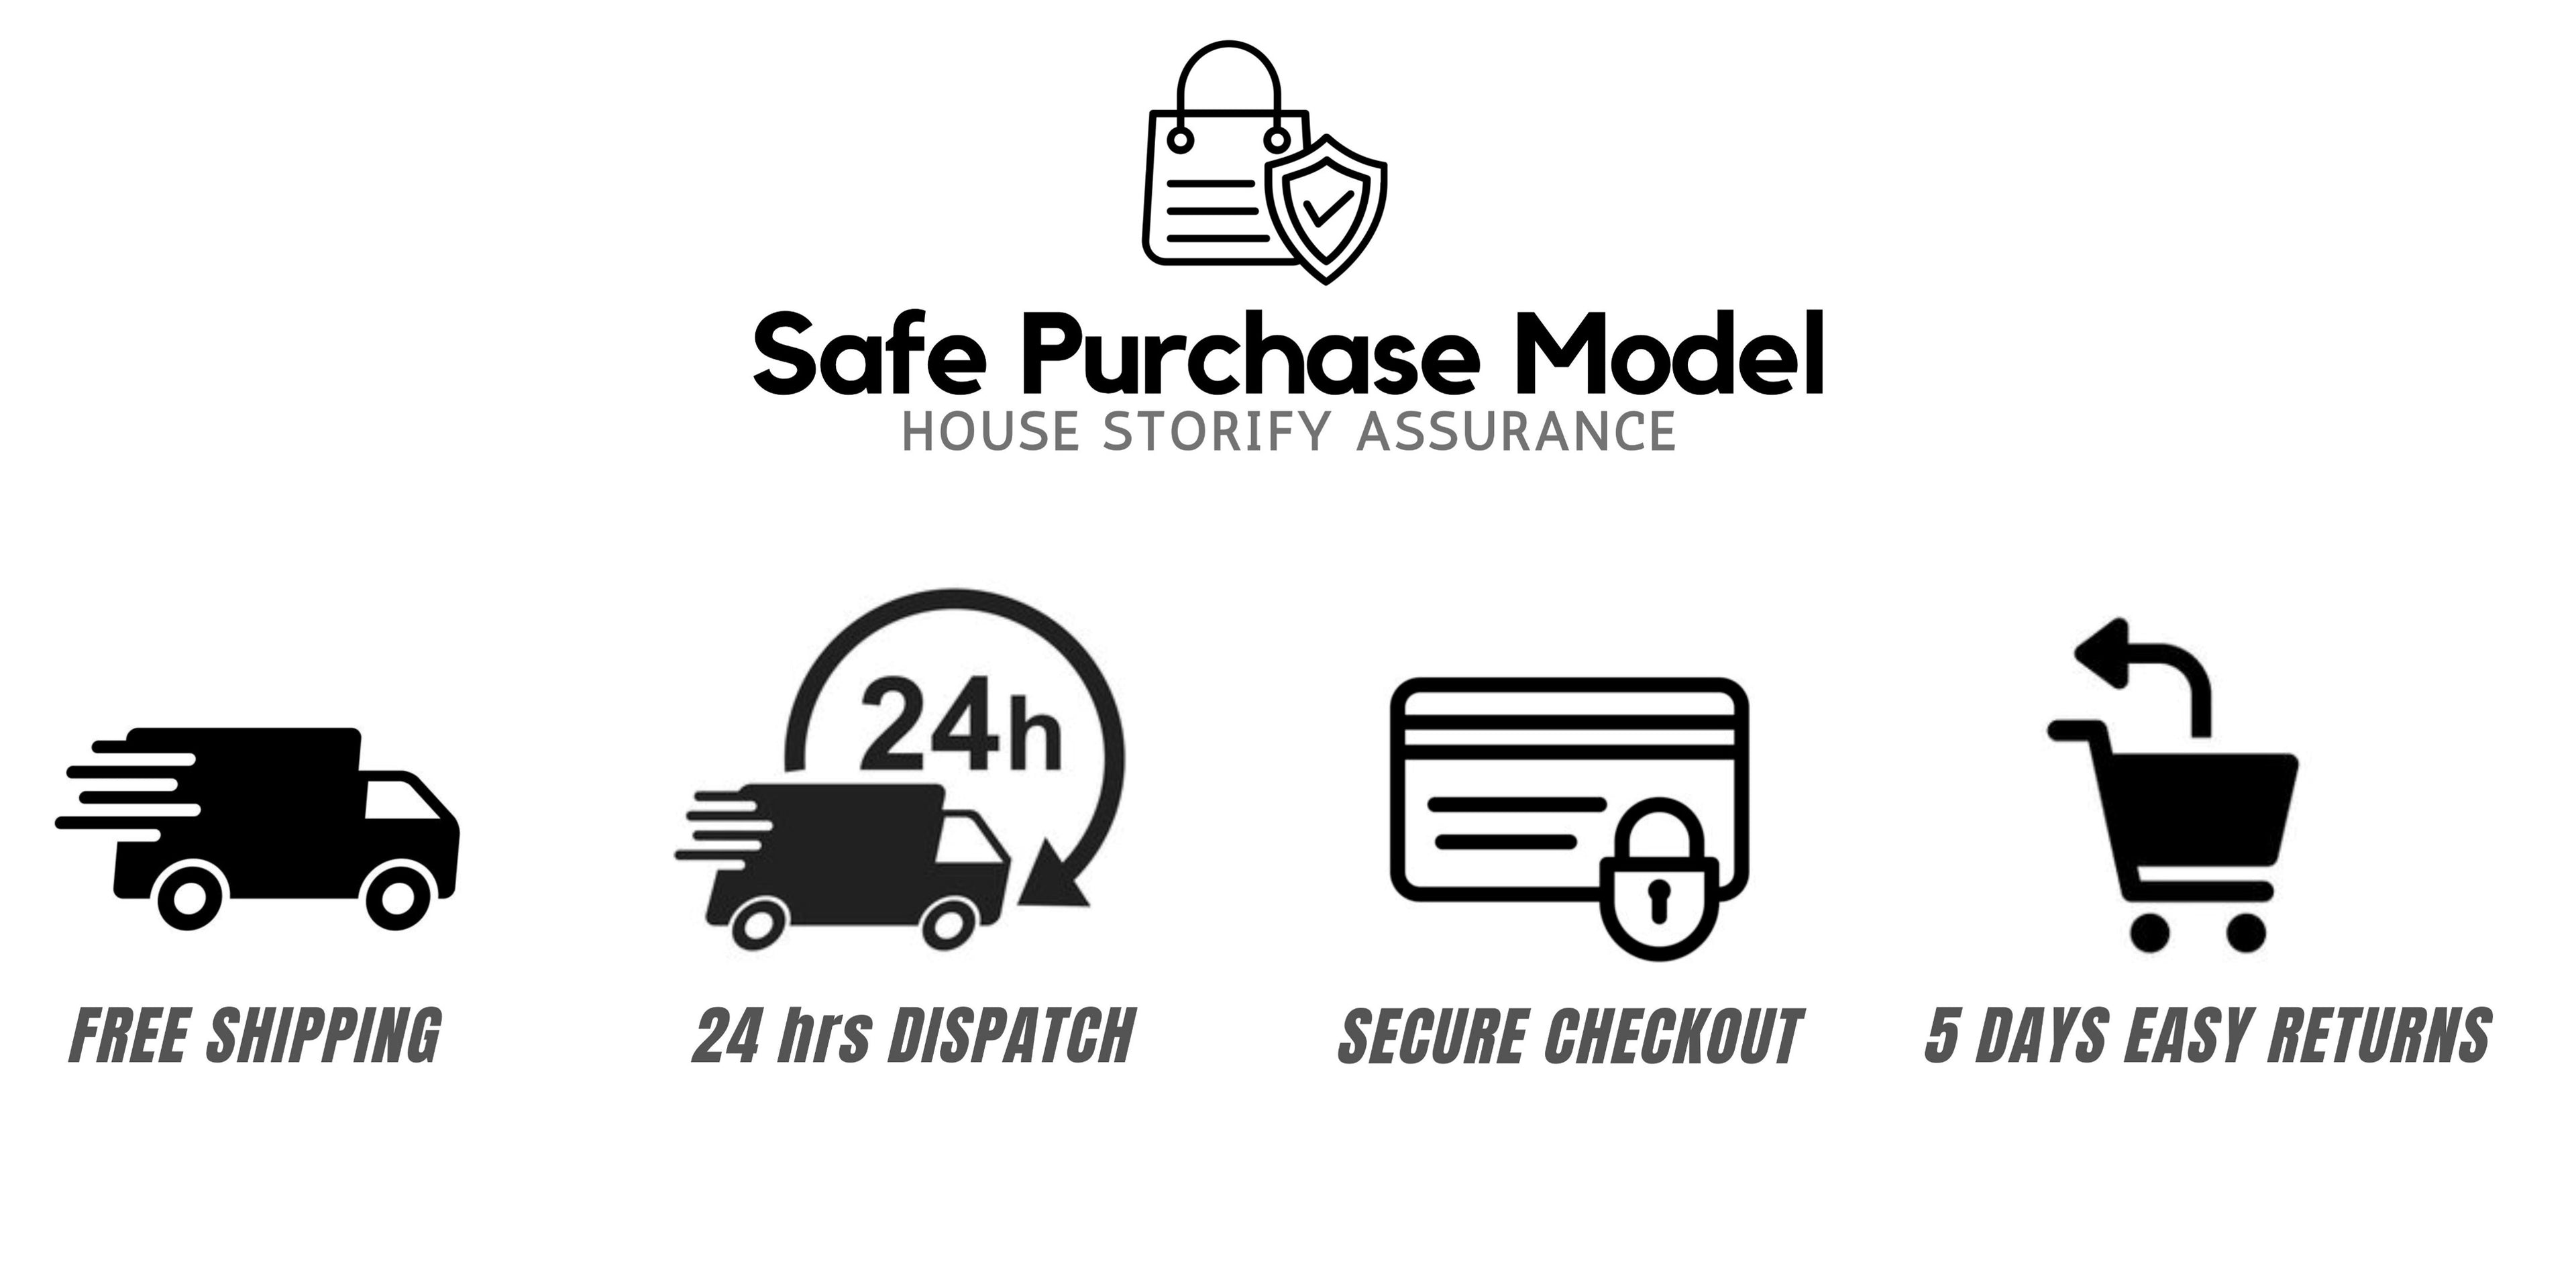 House Storify Safe Purchase Model – HOUSE STORIFY